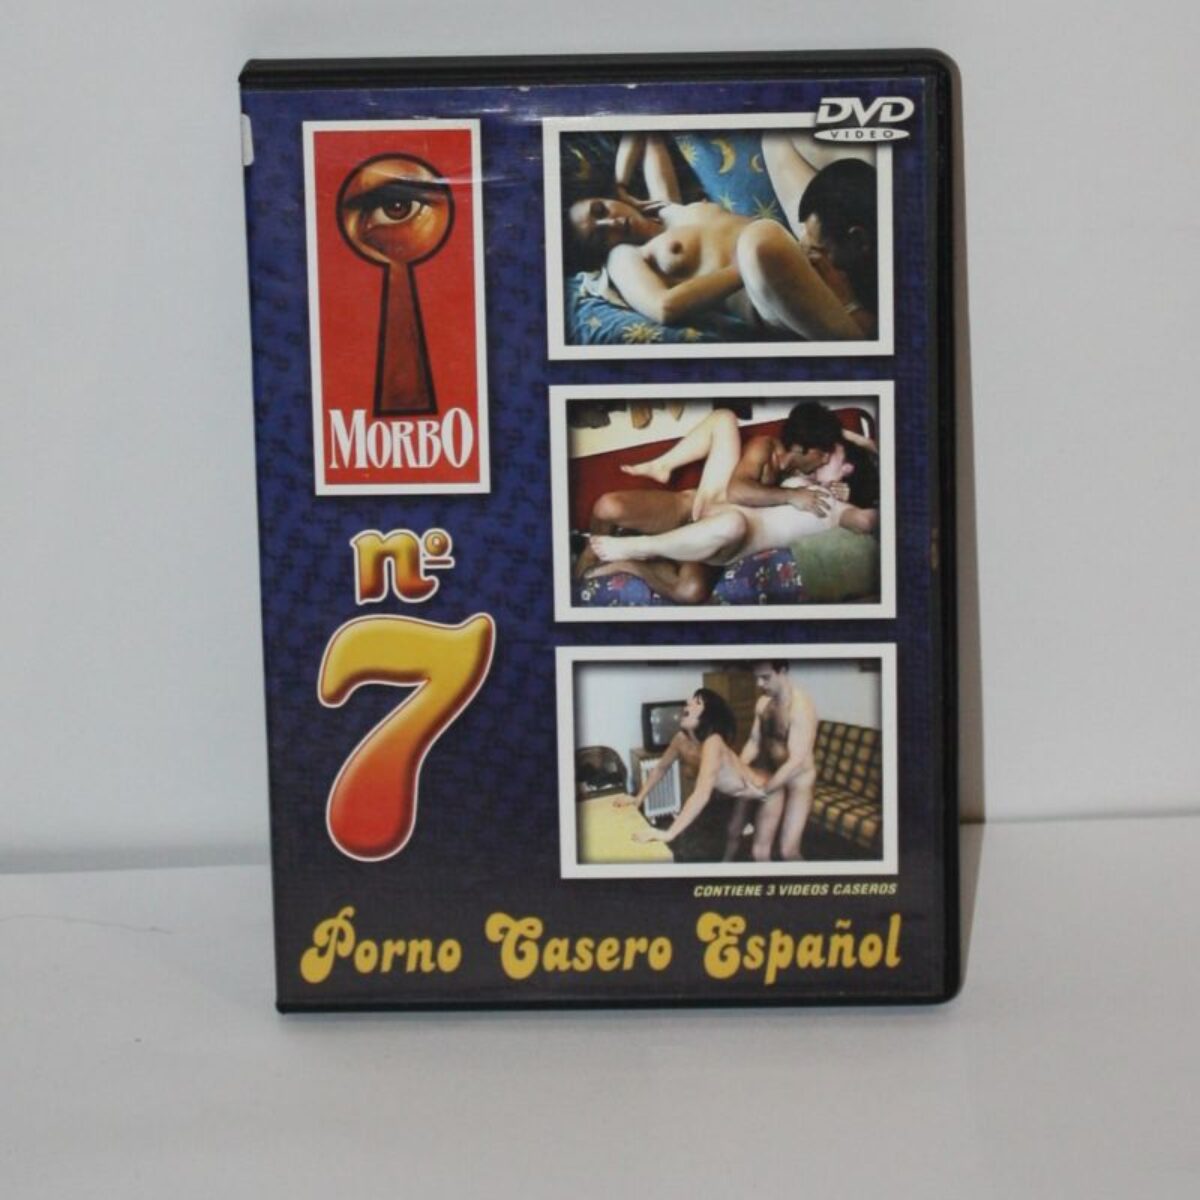 Película Morbo nº7 Porno Casero Español (DVD) • El Cubo Cósmico · Coleccionismo Foto